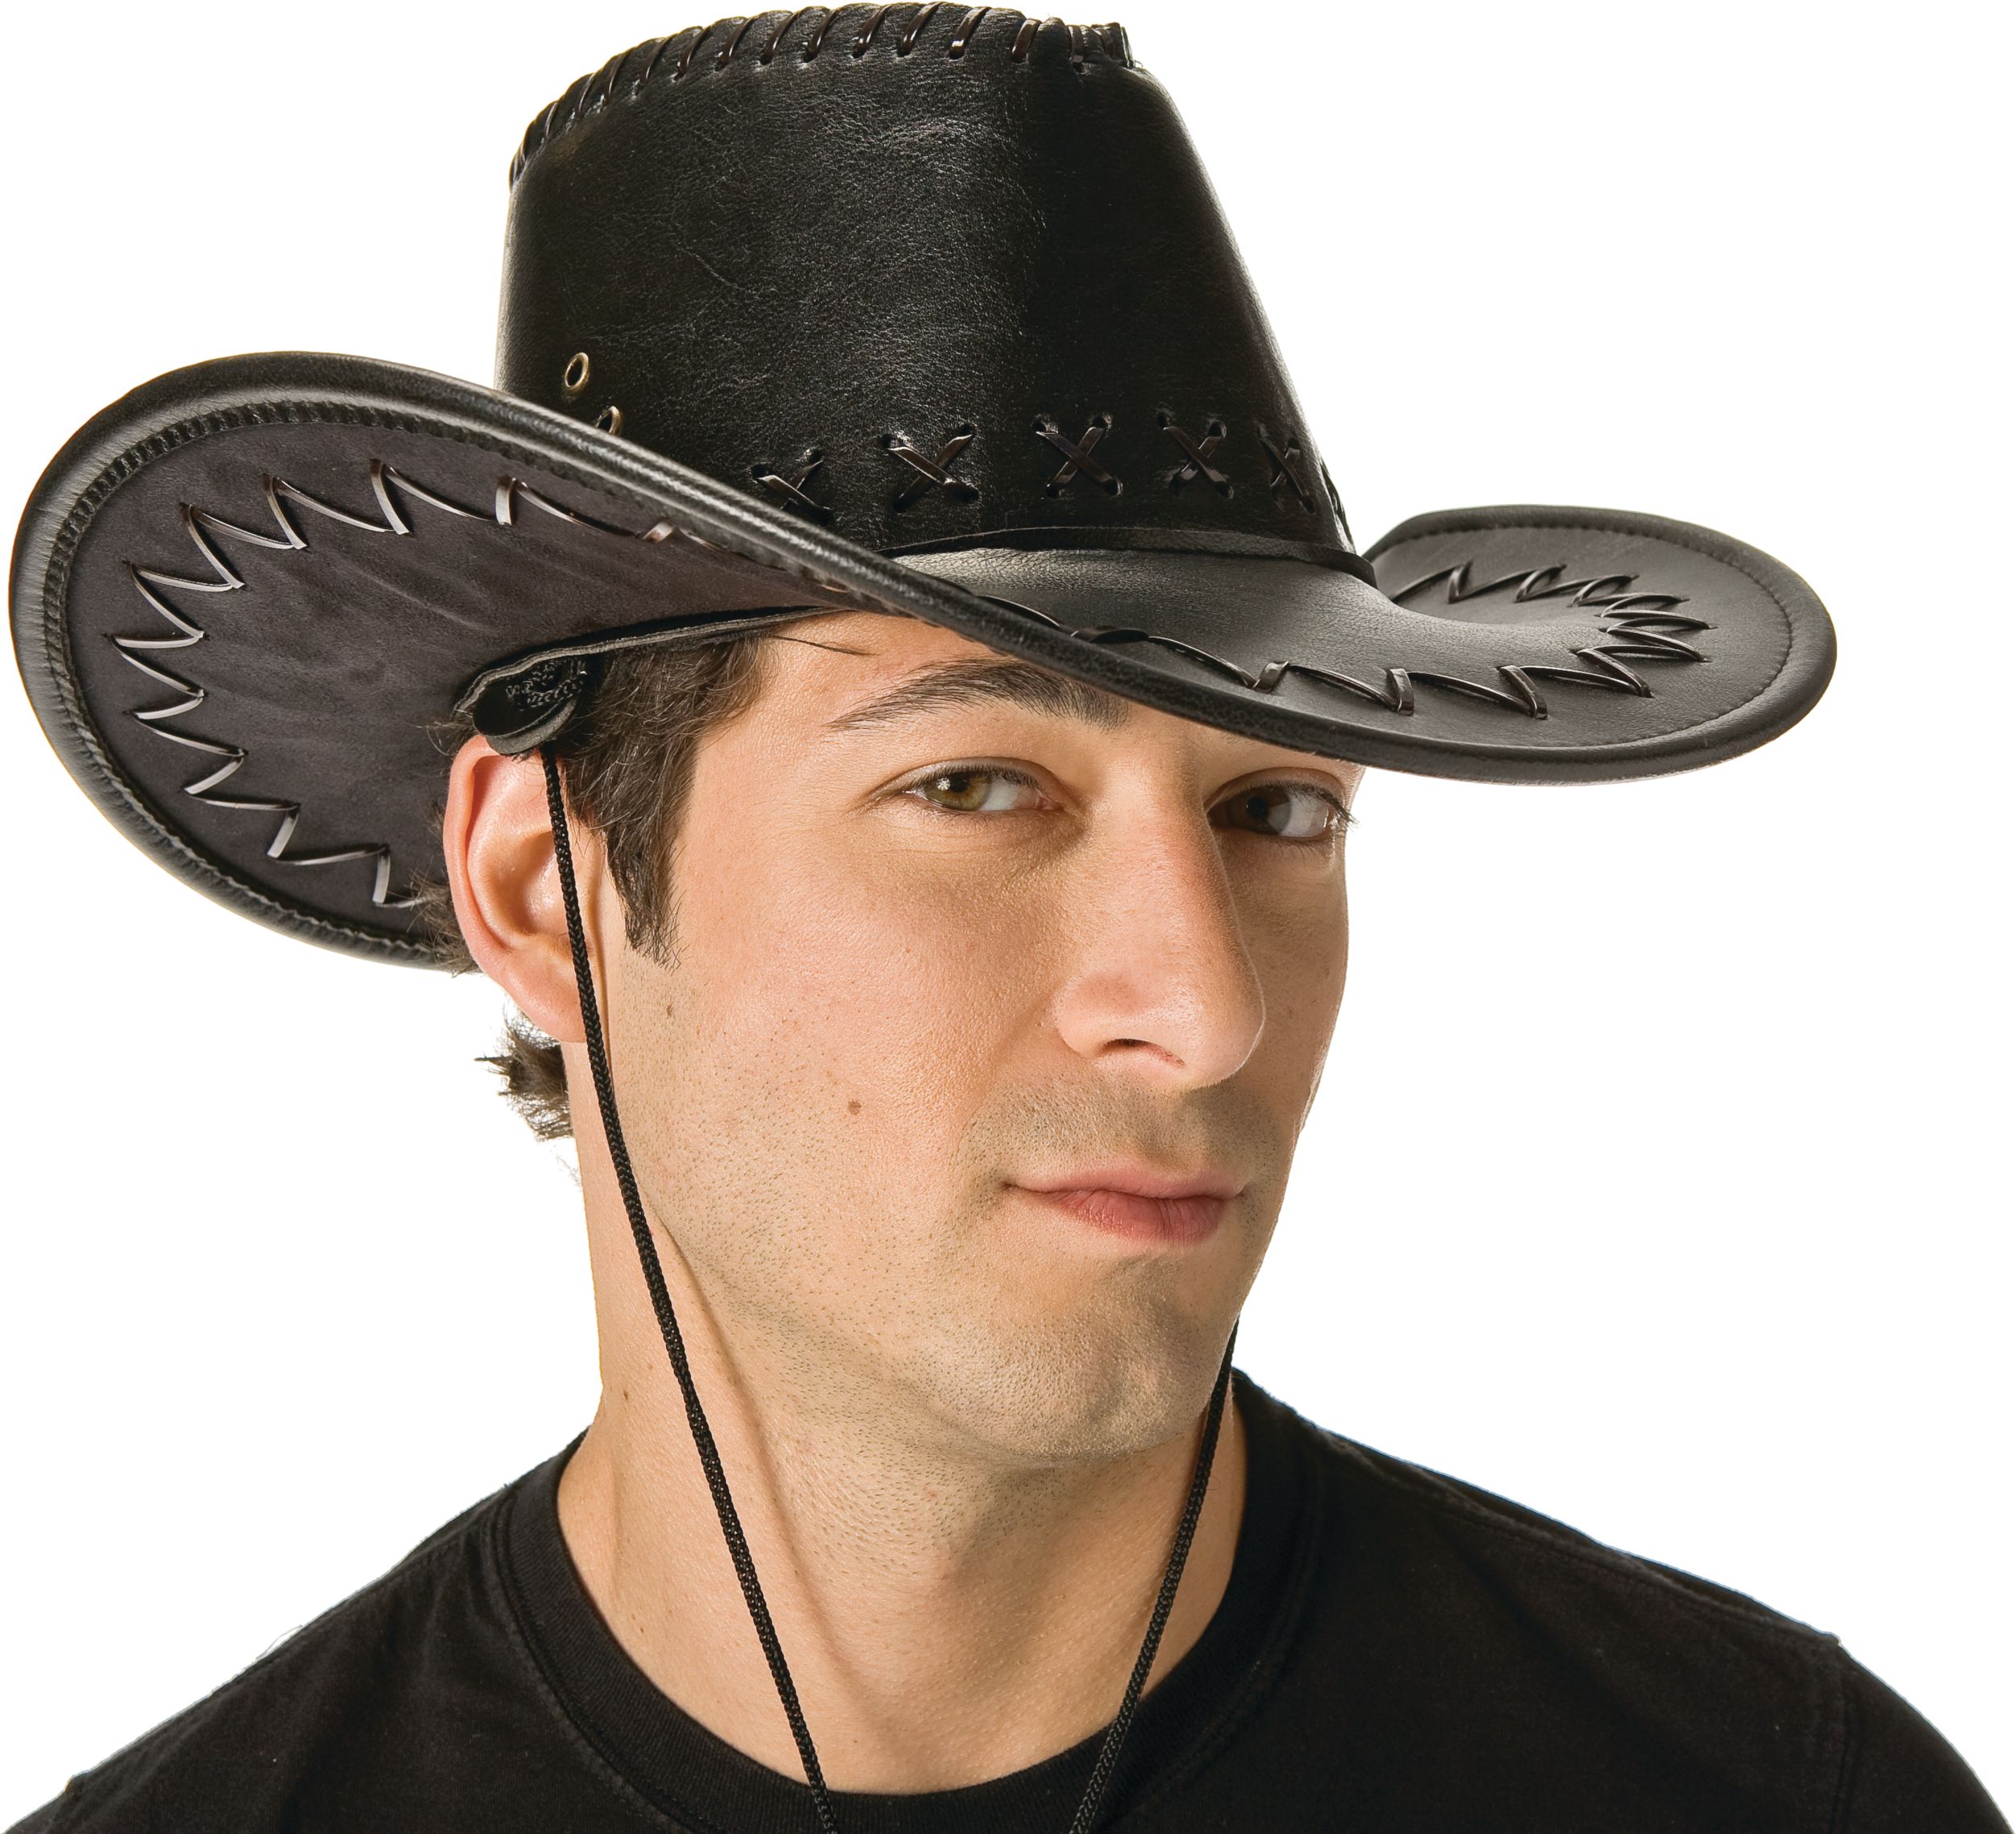 Chapeau de cowboy western à point de croix, noir, taille unique, accessoire  de costume à porter pour l'Halloween